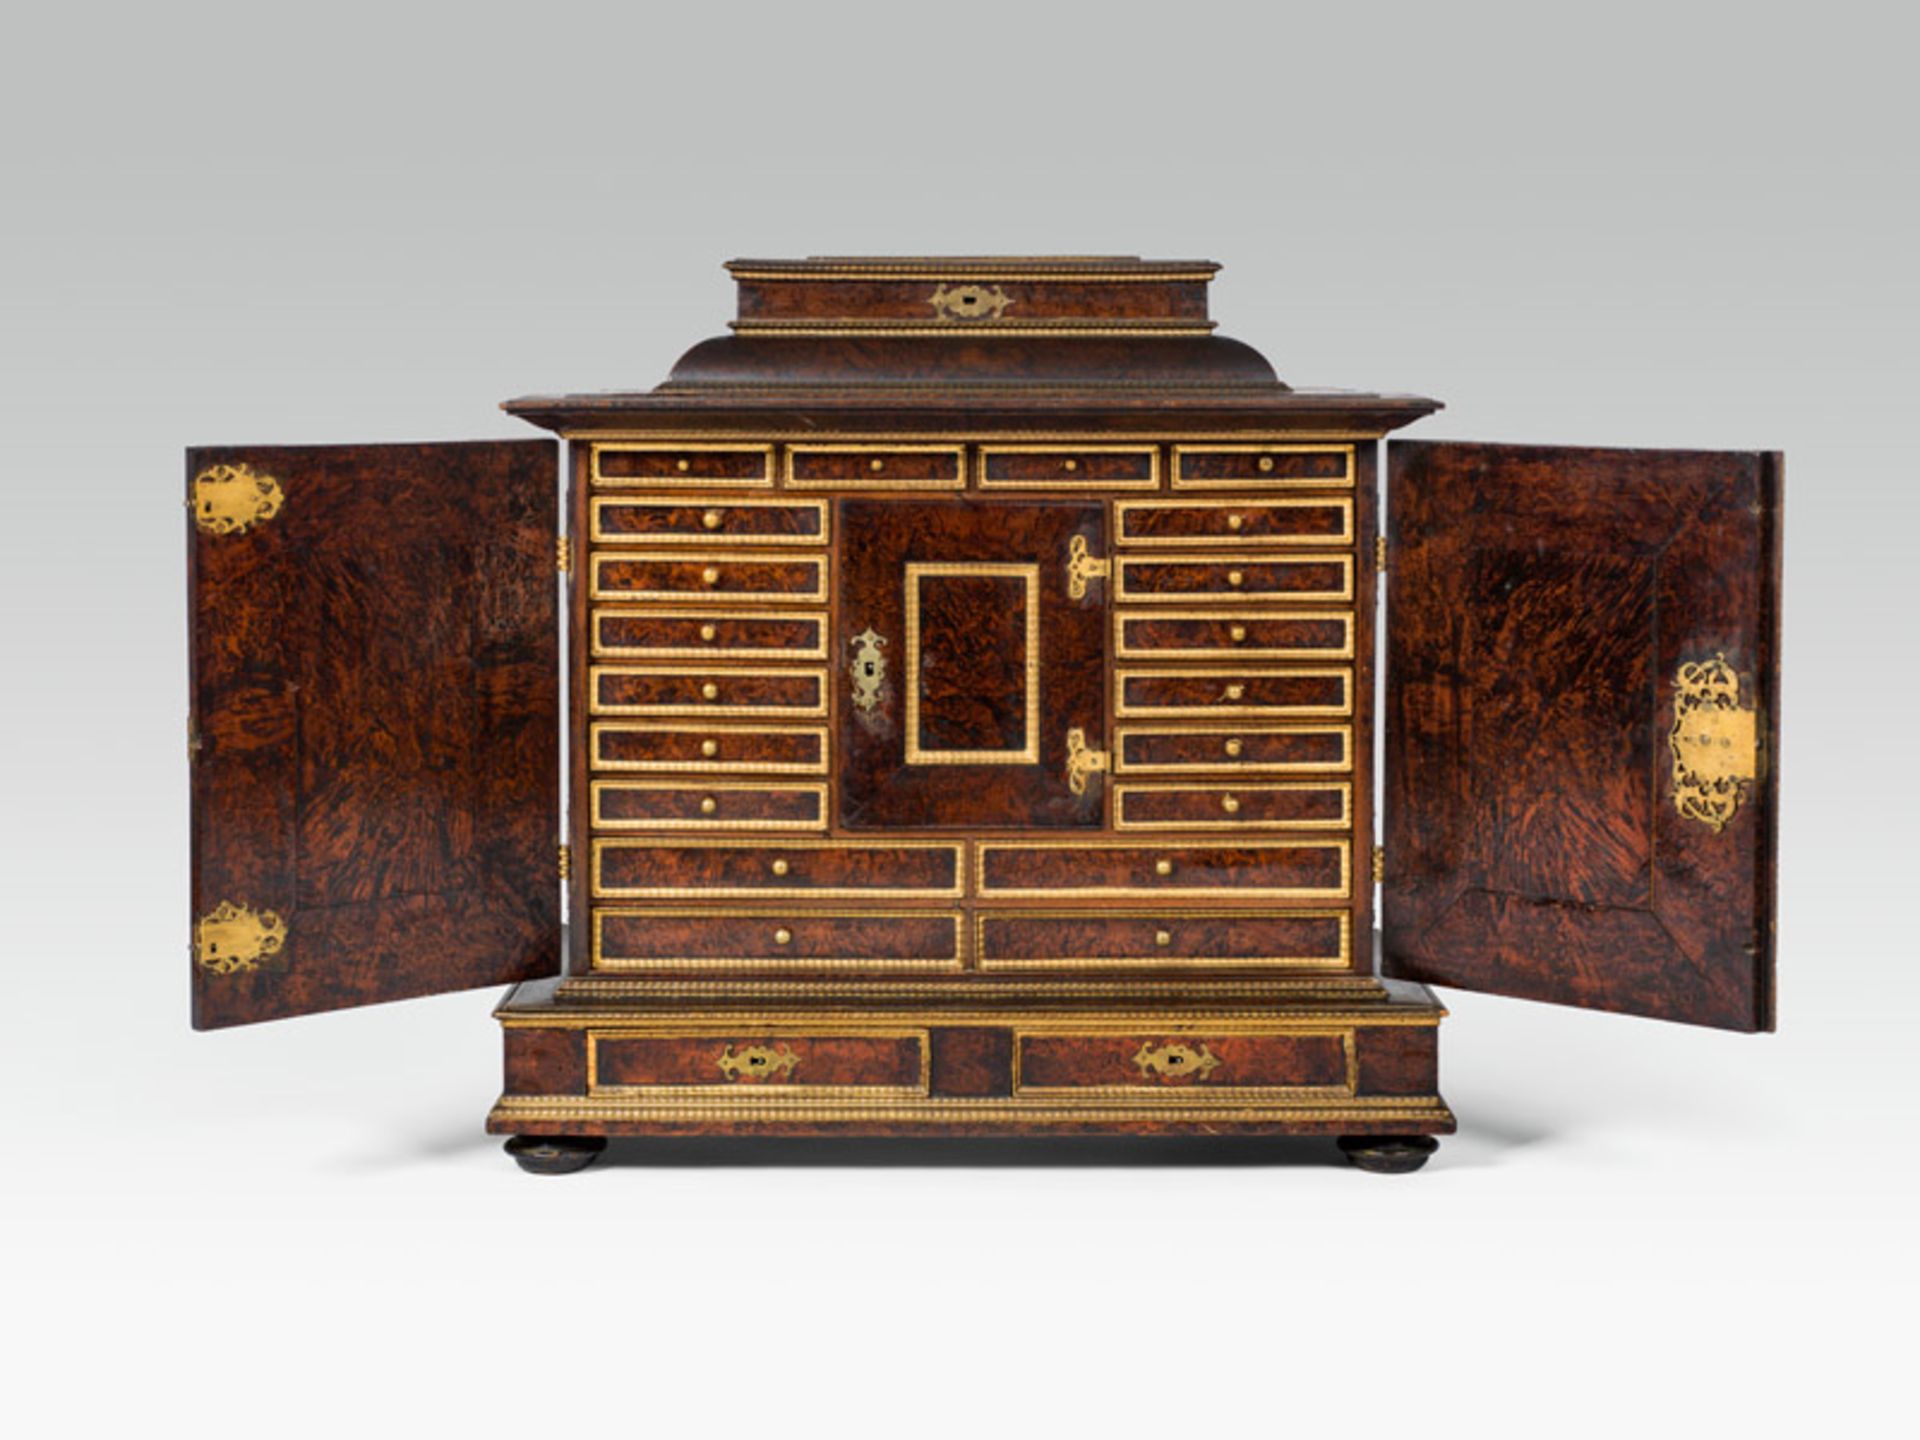 Cabinet, c. 1700